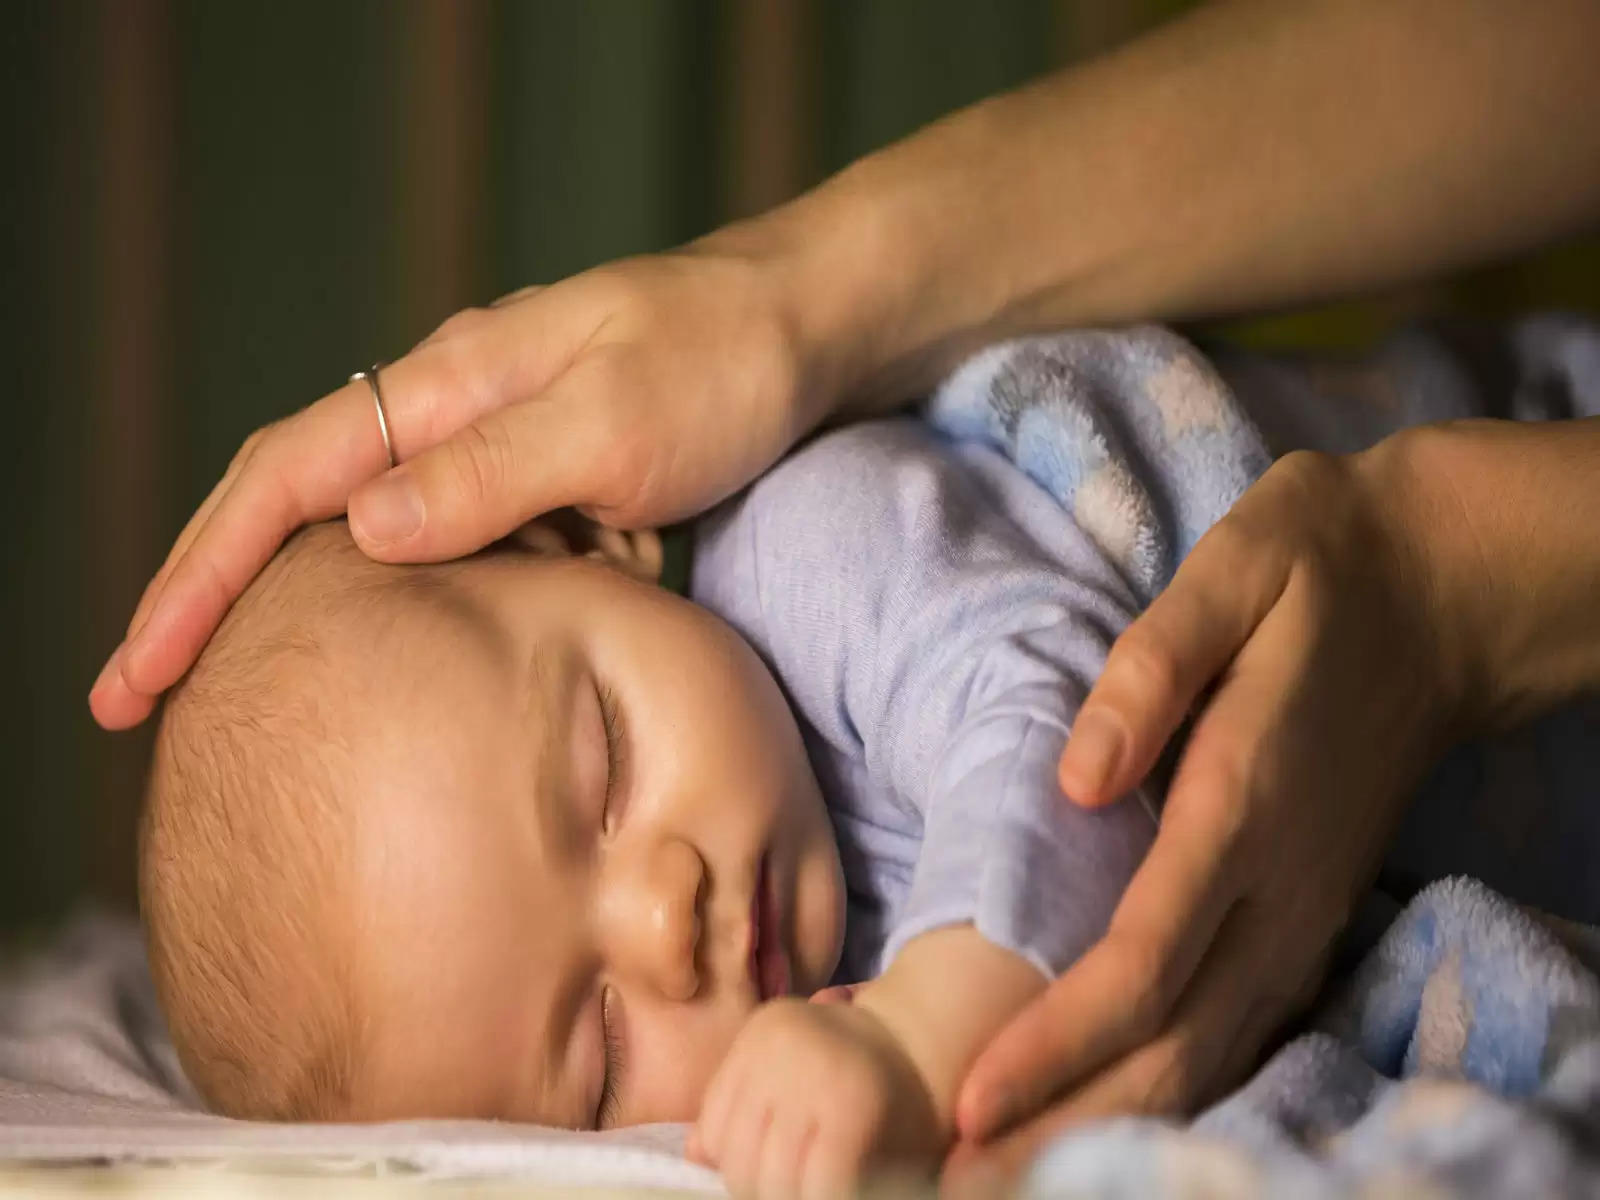 Child Care Tips- अपने बच्चे में अच्छी नींद की आदत डालने के लिए, ट्राय करे ये टिप्स   आपके शरीर के समग्र स्वास्थ्य को नींद बनाए रखने में महत्वपूर्ण भूमिका निभाती है, खासकर आपके नवजात शिशु में। अपने बच्चे को उनके बढ़ते वर्षों में मदद करने के लिए सोने की अच्छी आदतों को विकसित करना आवश्यक है। अगर आपका शिशु अच्छी तरह से सो नहीं पाता है, तो यह आपके नींद चक्र को भी प्रभावित कर सकता है। अगर आप कुछ सुझावों का पालन करते हैं, तो आप यह सुनिश्चित कर सकते हैं कि आपका शिशु अच्छी नींद ले। ये उनमे से कुछ है।  उनके सोने का समय निर्धारित करें बता दे की, नींद की गुणवत्ता को बढ़ावा देने के लिए आपके बच्चे के सोने का एक निश्चित कार्यक्रम होना चाहिए। उनके सोने और जागने का समय निश्चित करें और रात के समय की कुछ दिनचर्या बनाएं जैसे नहाना, खाना खिलाना या संगीत सुनना। आपको अपने बच्चे को बिस्तर पर लिटा देना चाहिए और उसके सो जाने का इंतजार नहीं करना चाहिए।  एक शांत करनेवाला का प्रयोग करें यदि आपके बच्चे को सोने में परेशानी होती है तो आप अपने बच्चे को चुसनी दे सकते हैं। जिसके अलावा, यह अचानक अस्पष्टीकृत शिशु मृत्यु सिंड्रोम के जोखिम को भी कम कर सकता है।  एक अच्छी नींद का वातावरण सुनिश्चित करें बता दे की, नींद को बढ़ावा देने के लिए आपके बच्चे के सोने के लिए एक अच्छा वातावरण निर्धारित किया गया है। कुछ शिशुओं को लपेटने में अधिक आराम मिलता है, जबकि अन्य को सफेद शोर ऐसा लगता है।  लंबे दिन के समय की झपकी से बचें झपकी लेना आपके बच्चे के स्वास्थ्य के लिए फायदेमंद हो सकता है, सोने से पहले लंबी झपकी लेने से बचें क्योंकि यह उनके सोने के कार्यक्रम को बिगाड़ सकता है।  संकेत जो बताते हैं कि आपका बच्चा थका हुआ है आपकी जानकारी के लिए बता दे की, बच्चे अधिक सोते हैं और दो घंटे से अधिक नहीं जागते हैं। उनका जागने का समय धीरे-धीरे बढ़ता है, और यदि आप उन्हें लेटने में अधिक समय लेते हैं, तो उनके लिए सोना मुश्किल हो सकता है। आपको शुरुआती महीनों में उन संकेतों के बारे में सीखना चाहिए जो संकेत करते हैं कि आपका बच्चा थका हुआ है। उनमें से कुछ इस प्रकार हैं:  आपका शिशु अपनी आँखों को रगड़ता है या अपने हाथों से अपना कान हिलाता है। आपका बच्चा रो रहा है और उसे लोगों और खिलौनों में कोई दिलचस्पी नहीं है। आपका शिशु जम्हाई लेता है और बहुत अधिक खिंचाव करता है। आपका बच्चा थके होने पर भी शांत और शांत हो सकता है। जमीनी स्तर अगर आपका बच्चा अच्छी नींद लेता है, तो यह आपको अच्छी नींद दिलाने में भी मदद कर सकता है। यदि आपके बच्चे को सोने में कठिनाई होती है और वह लगातार रोता रहता है, तो आपको अपने डॉक्टर से मदद लेनी चाहिए।